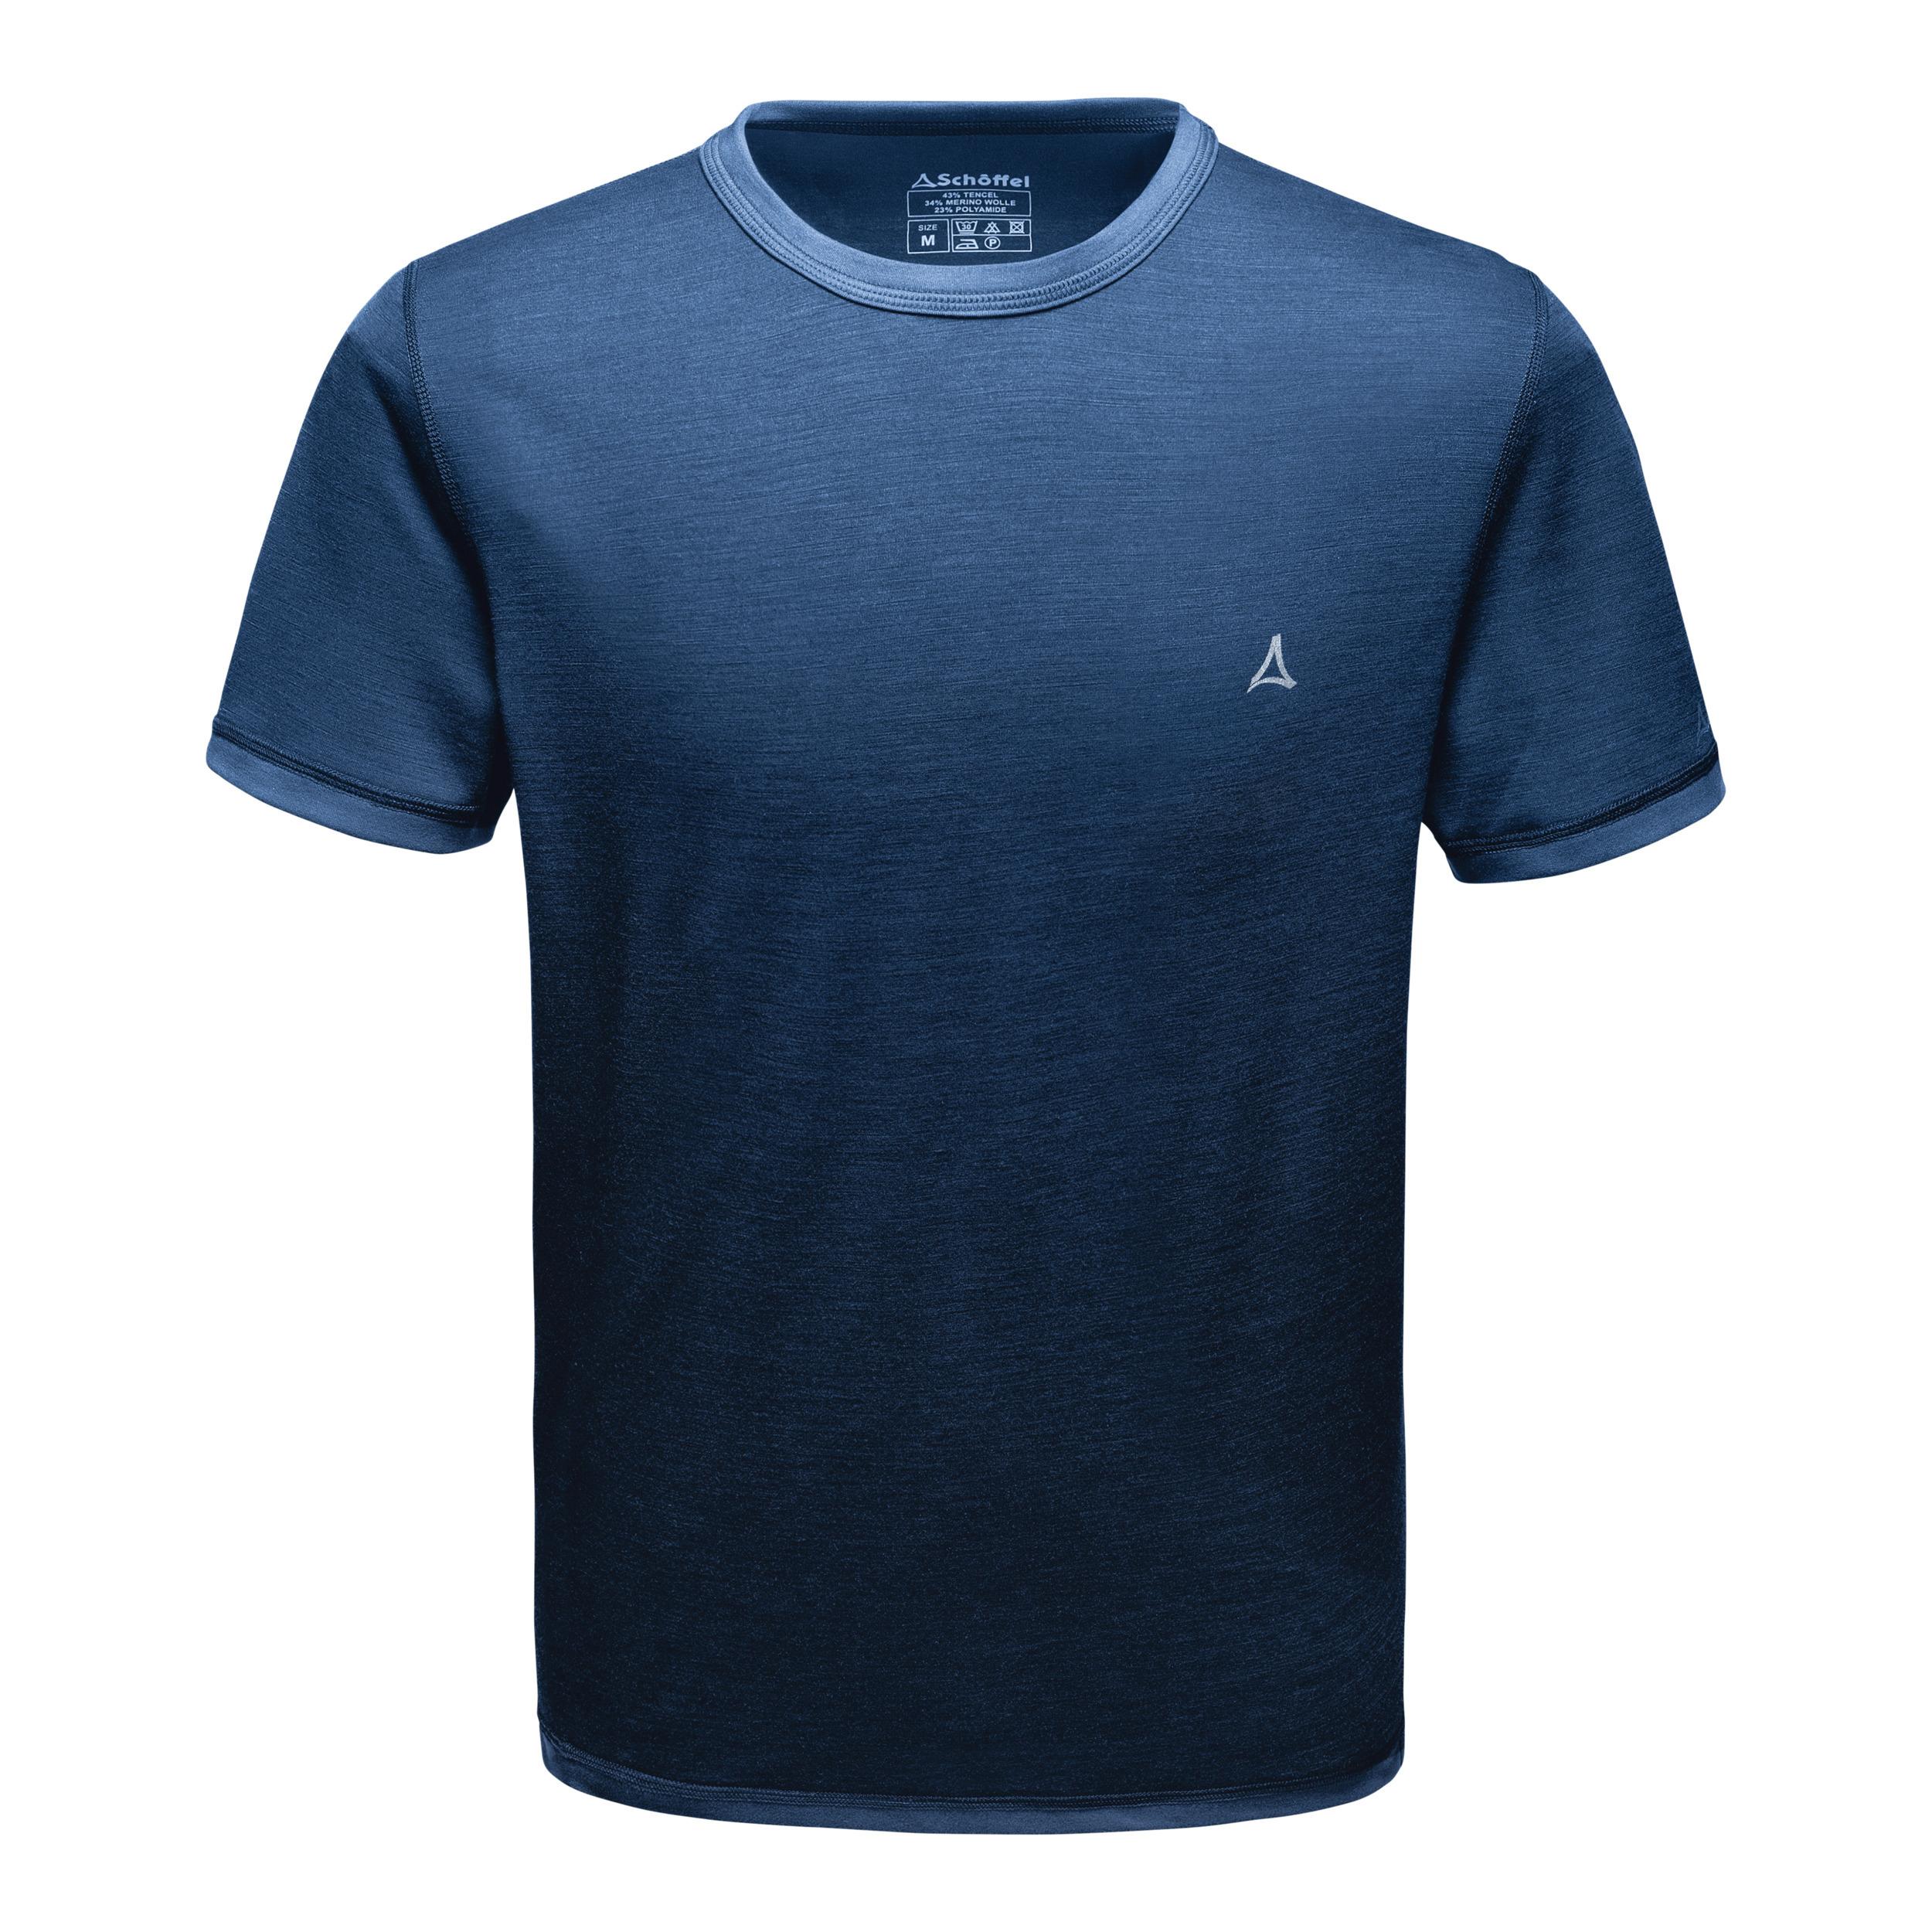 M kaufen mazarine Shop SportScheck Sport Funktionsshirt Merino 1/2 Herren Arm von im Schöffel Online Shirt blue